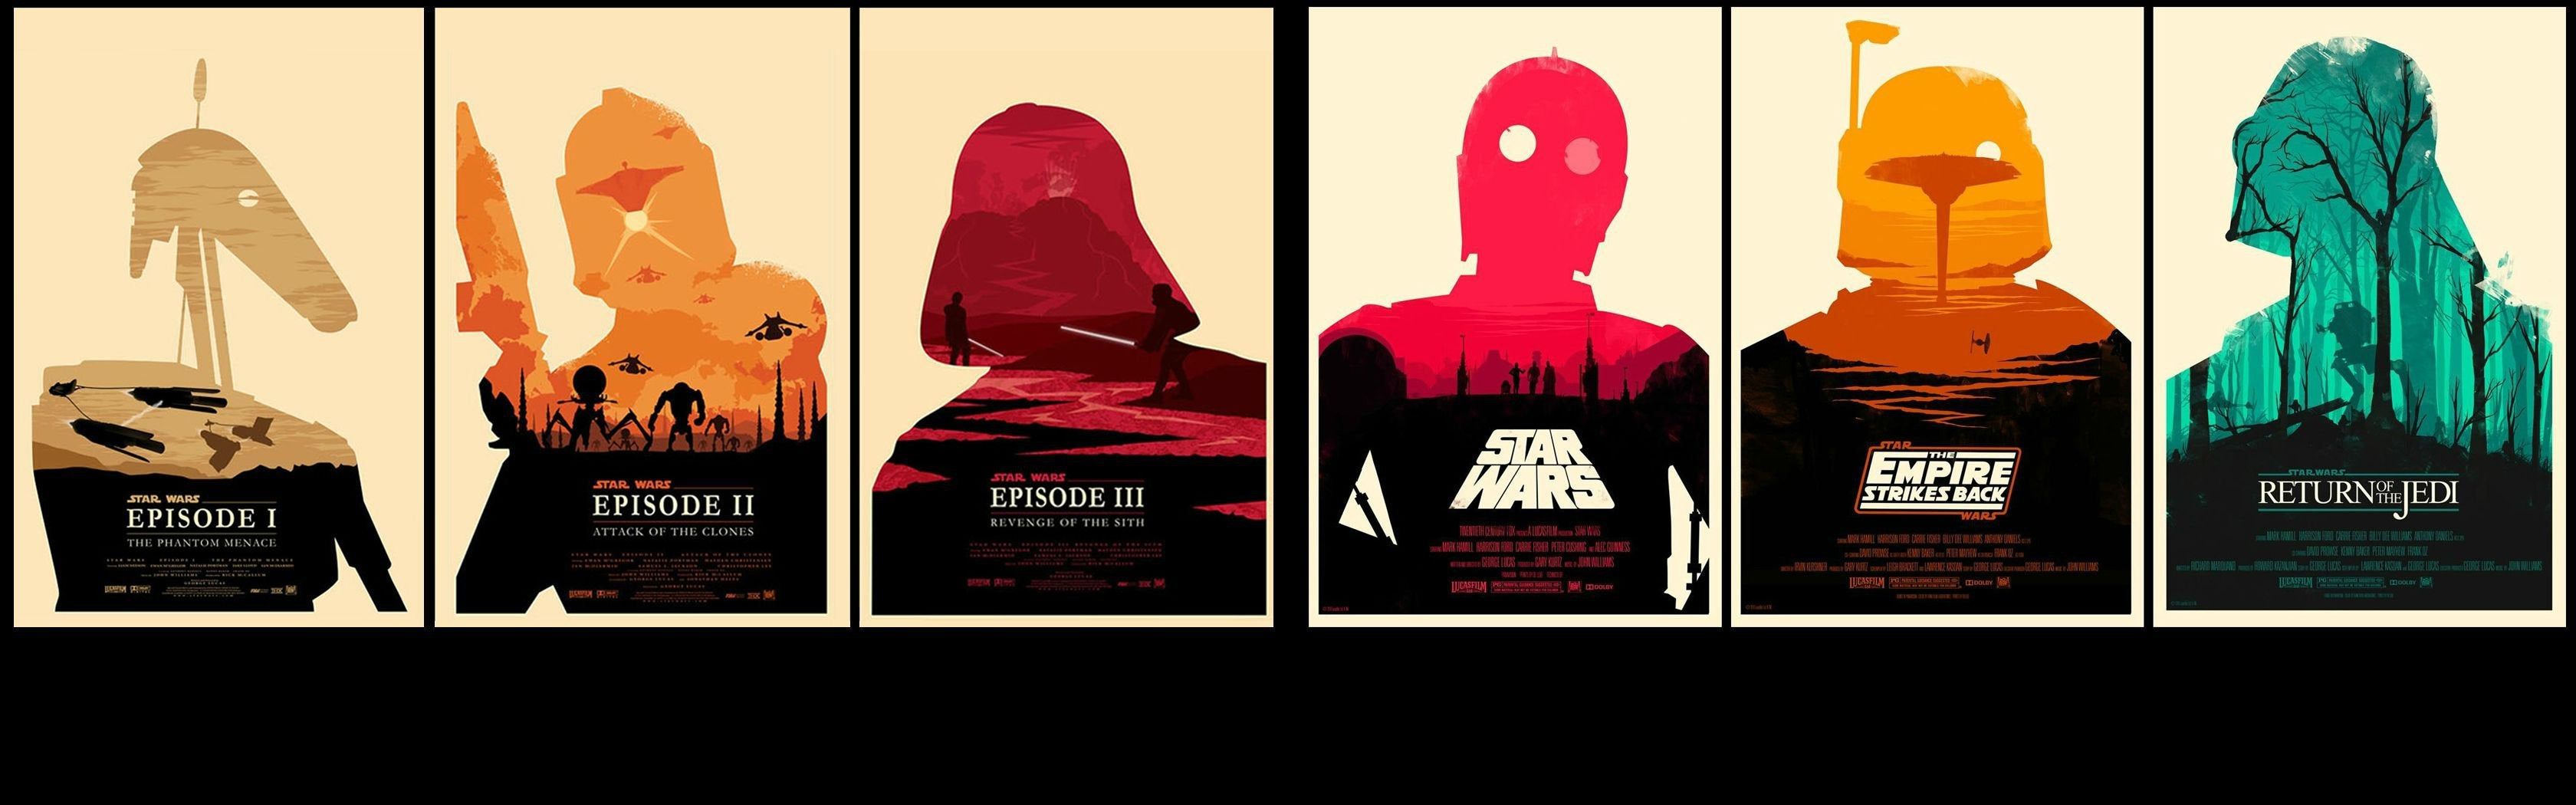 Star wars originals + prequels combined for dual screen wallpaper